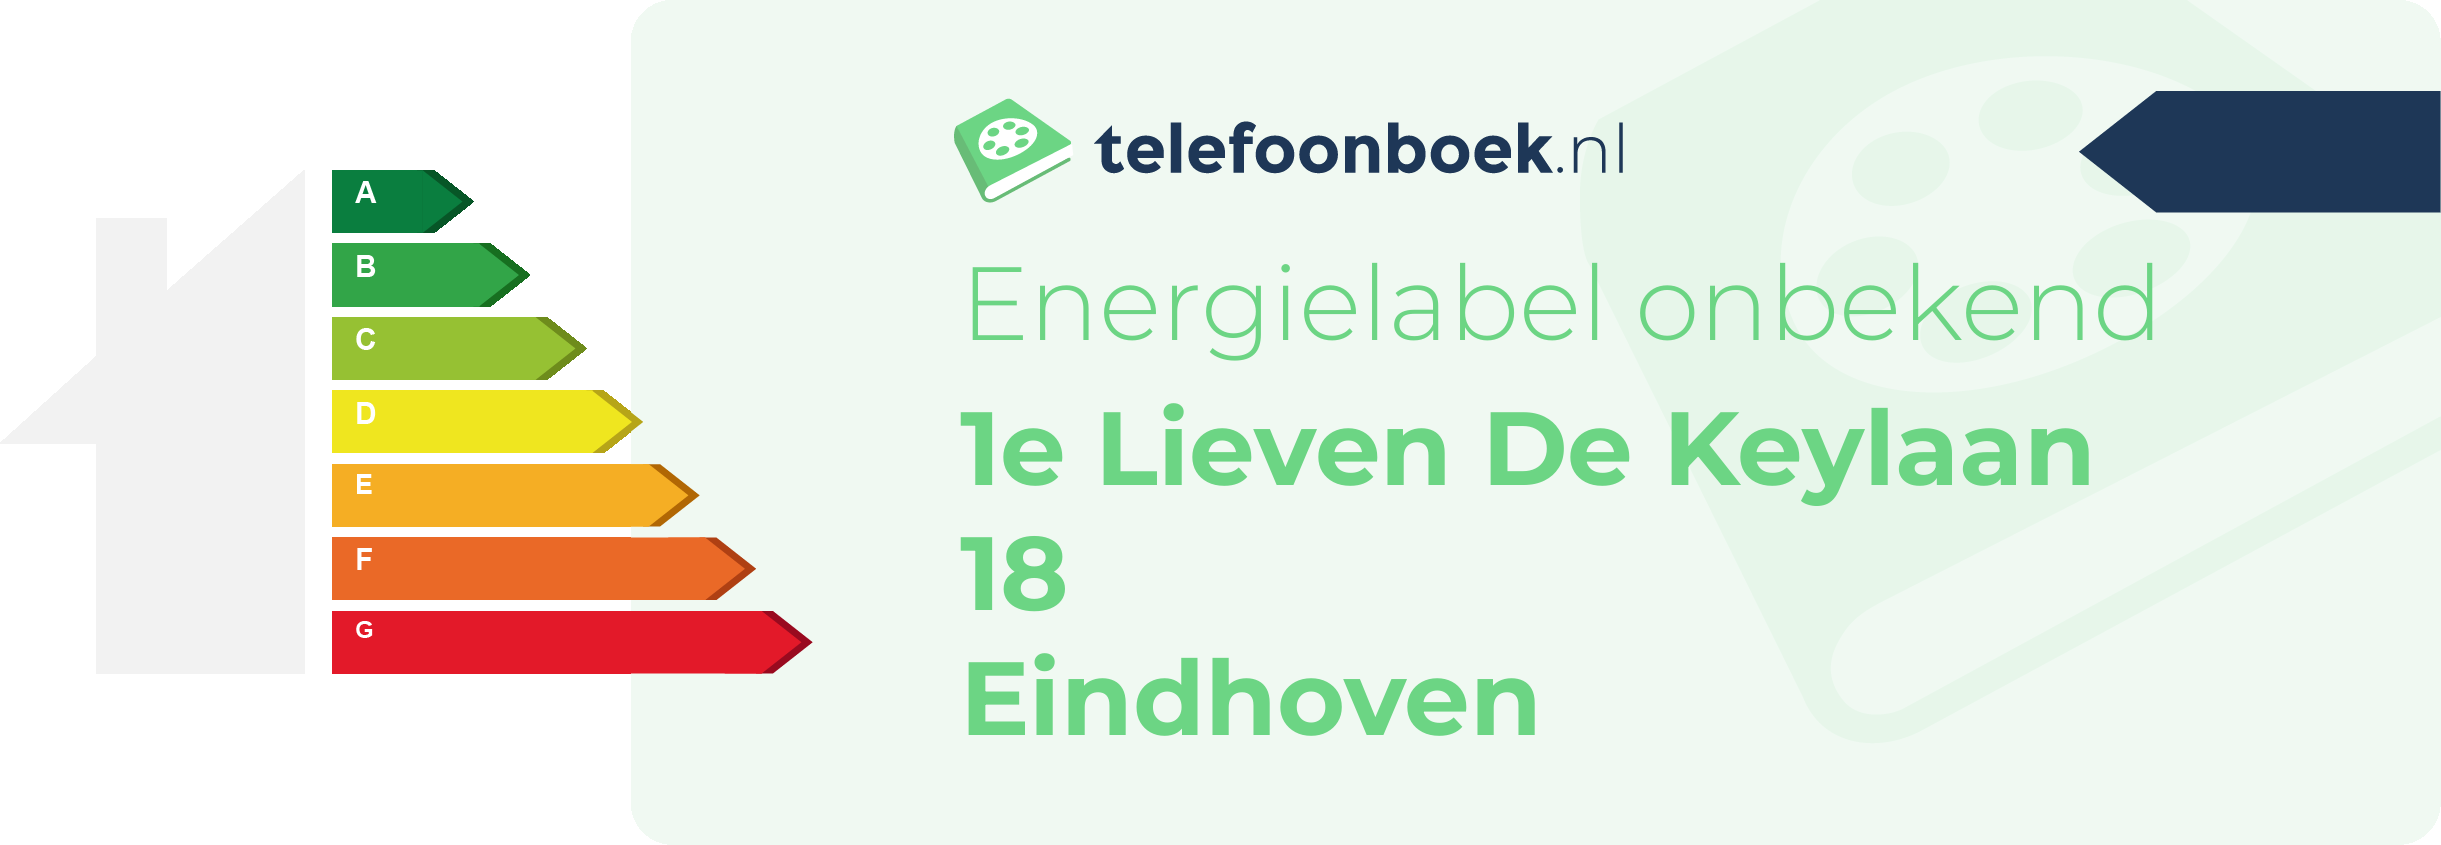 Energielabel 1e Lieven De Keylaan 18 Eindhoven